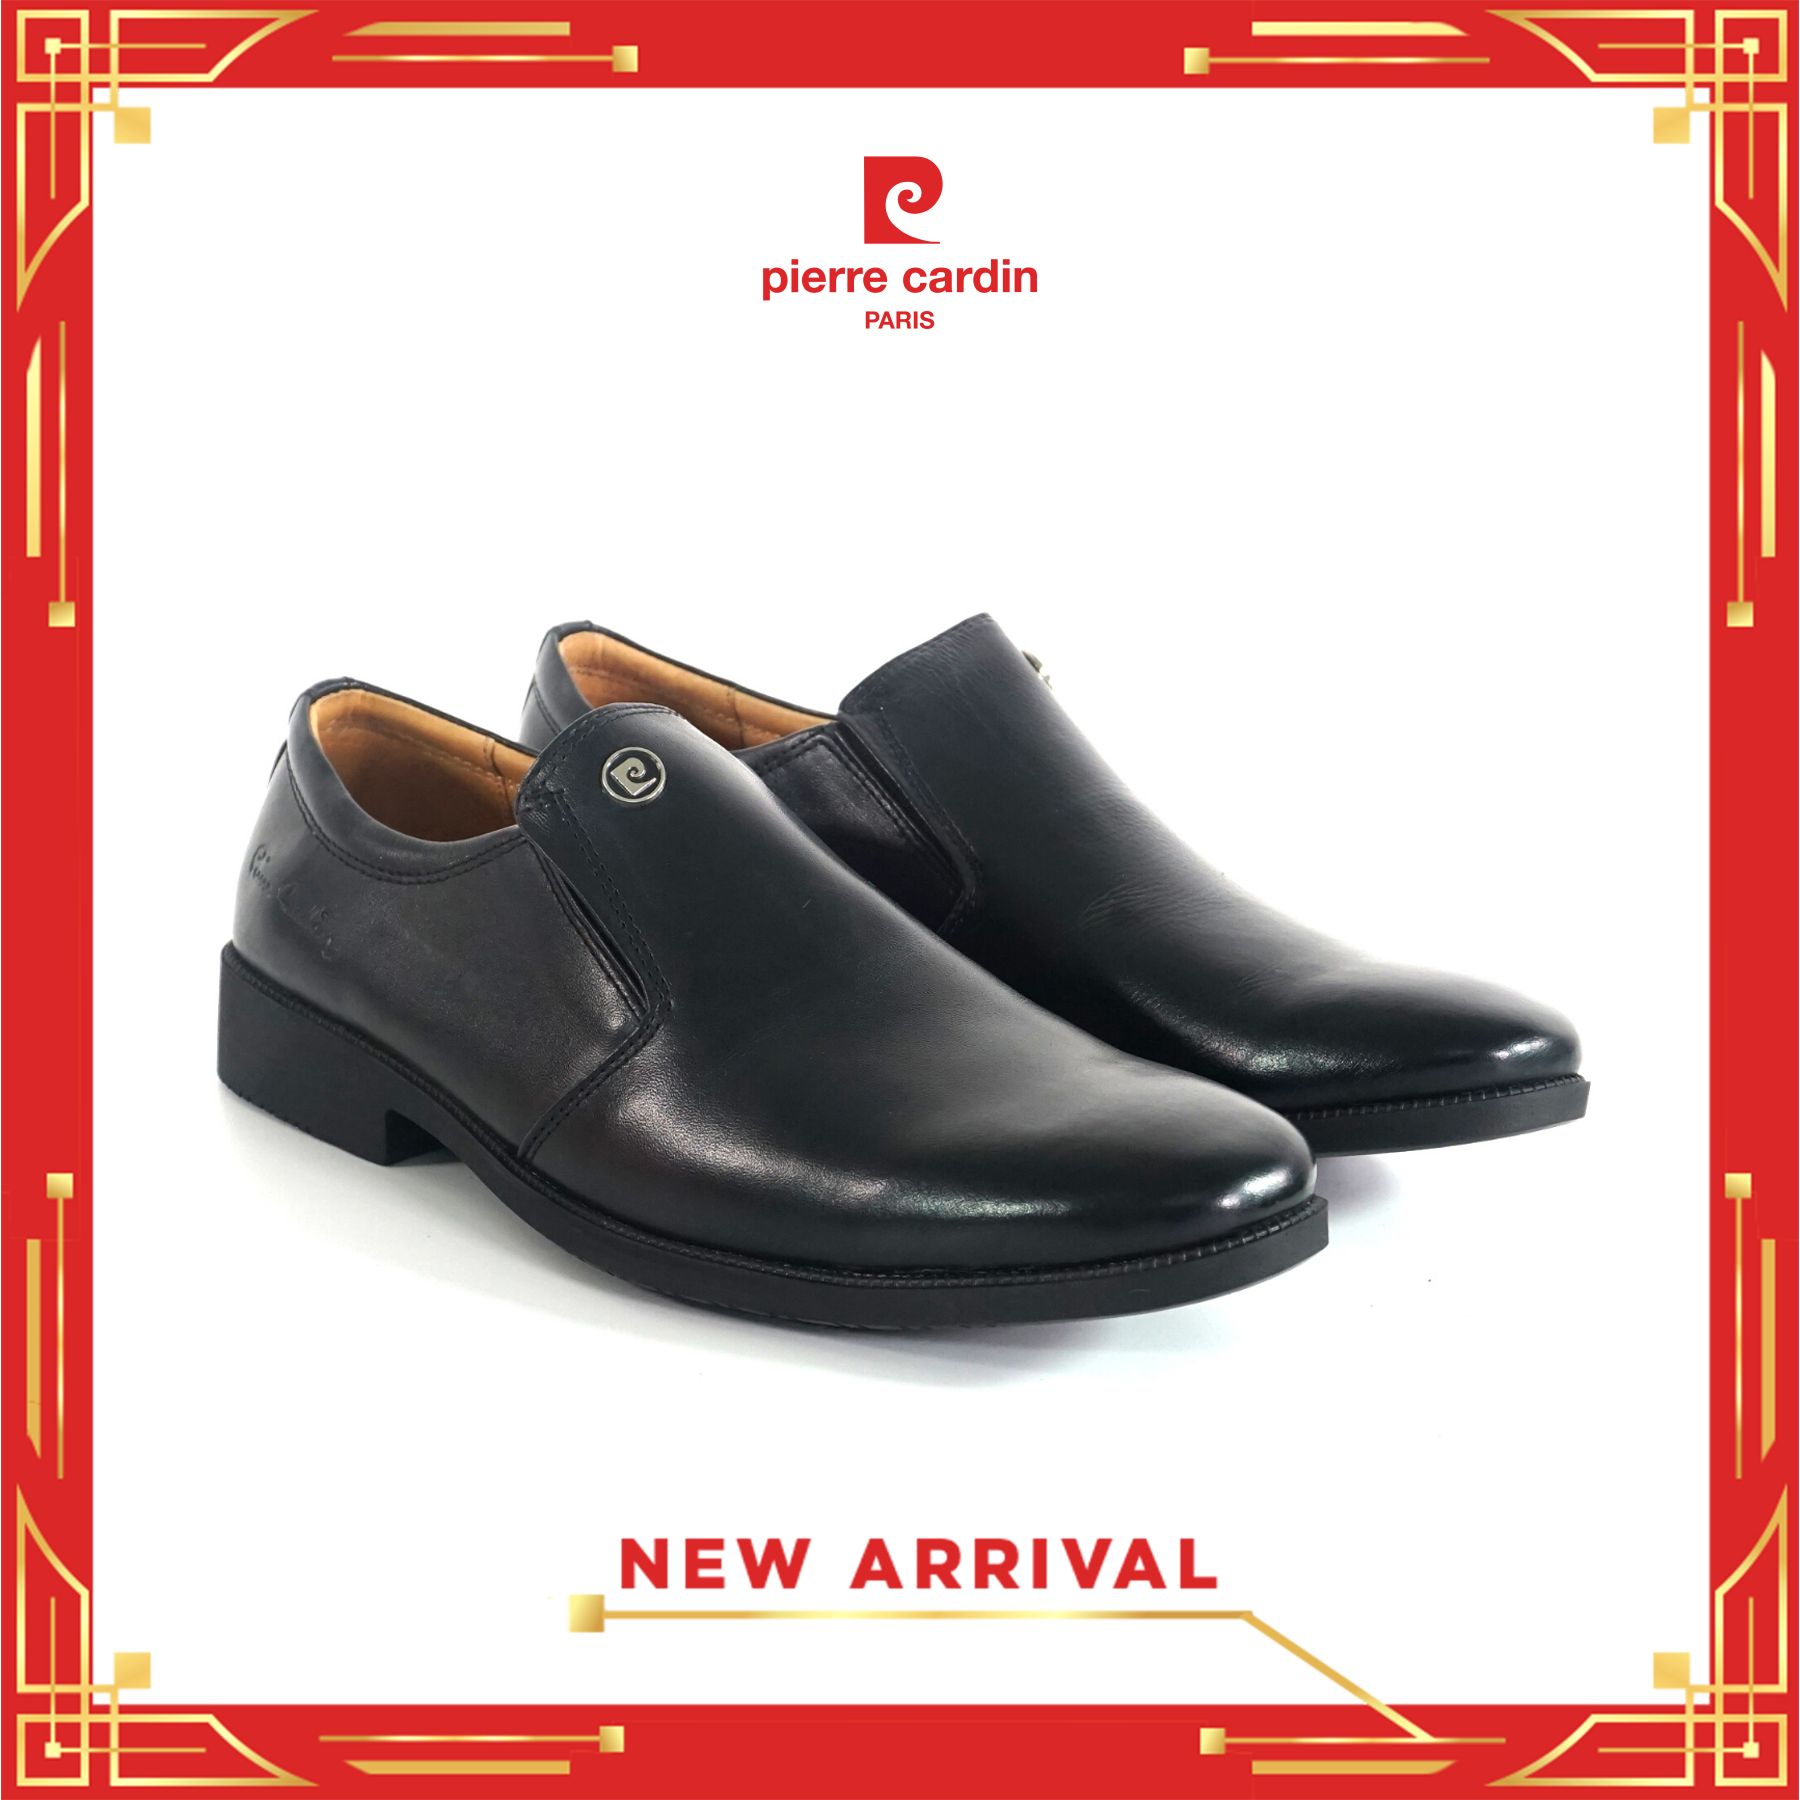 Pierre Cardin Paris Vietnam: Loafer Shoes - PCMFWLE 767